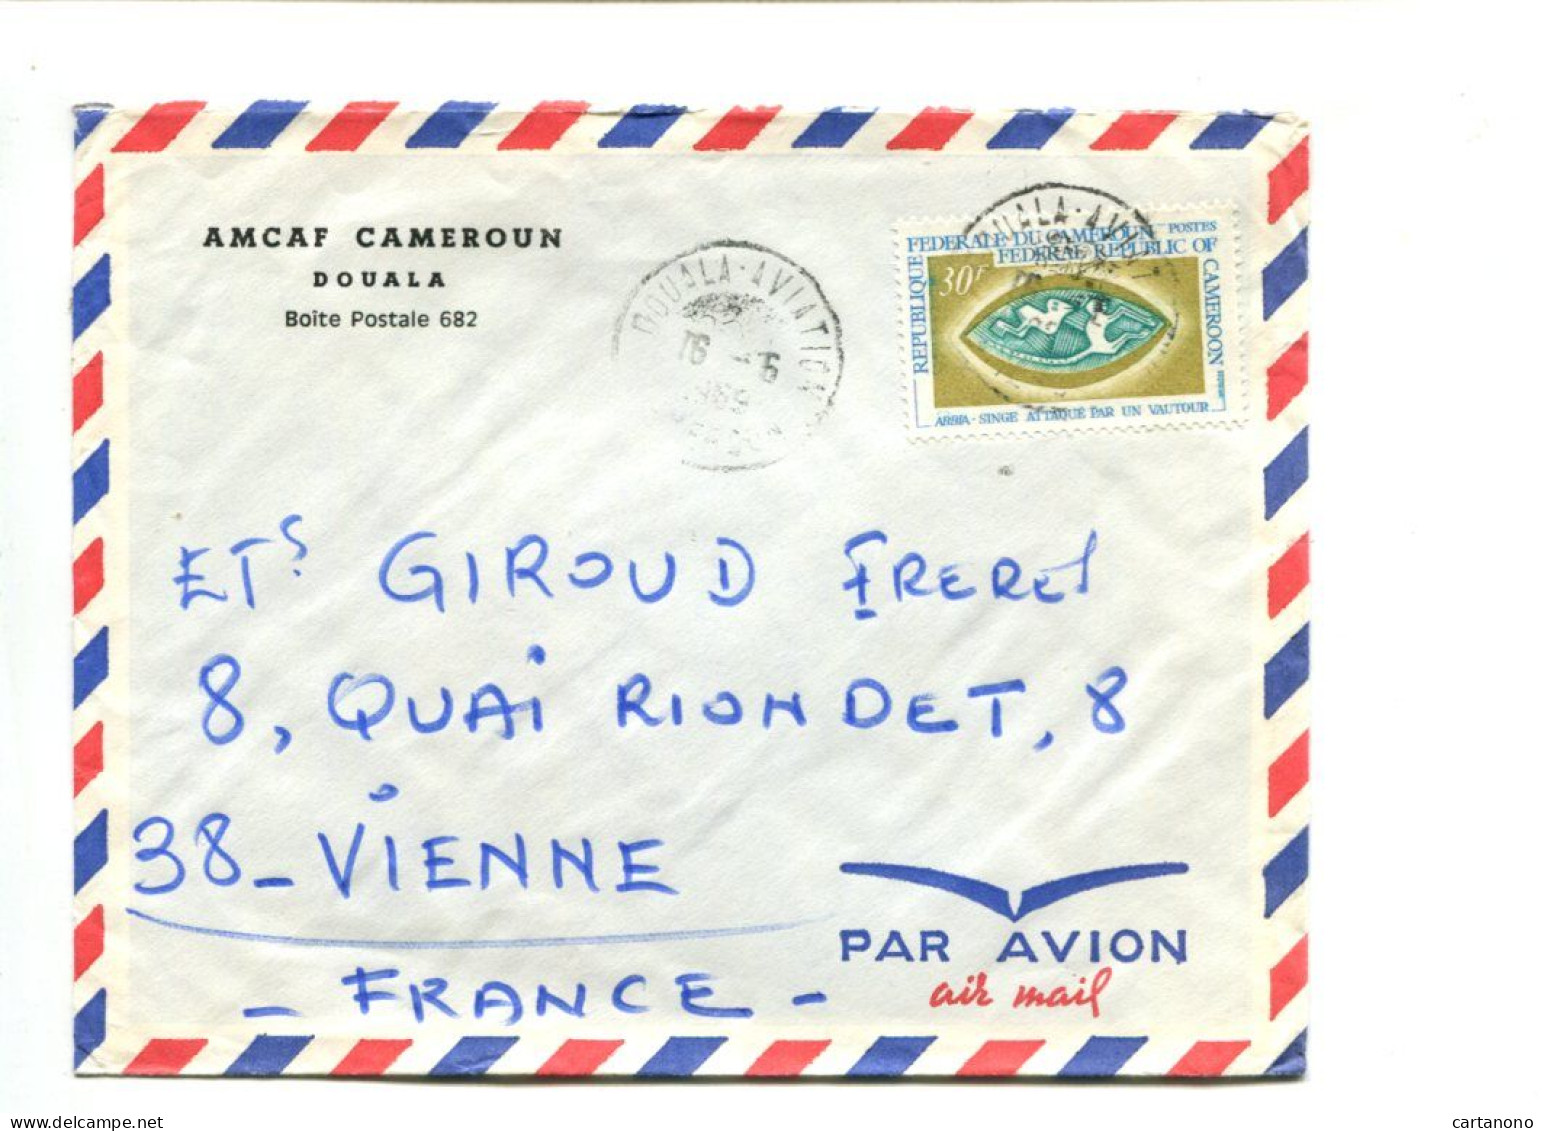 CAMEROUN - Affranchissement Sur Lettre Par Avion - ABBIA / Singe Attaqué Par Un Vautour - Kamerun (1960-...)